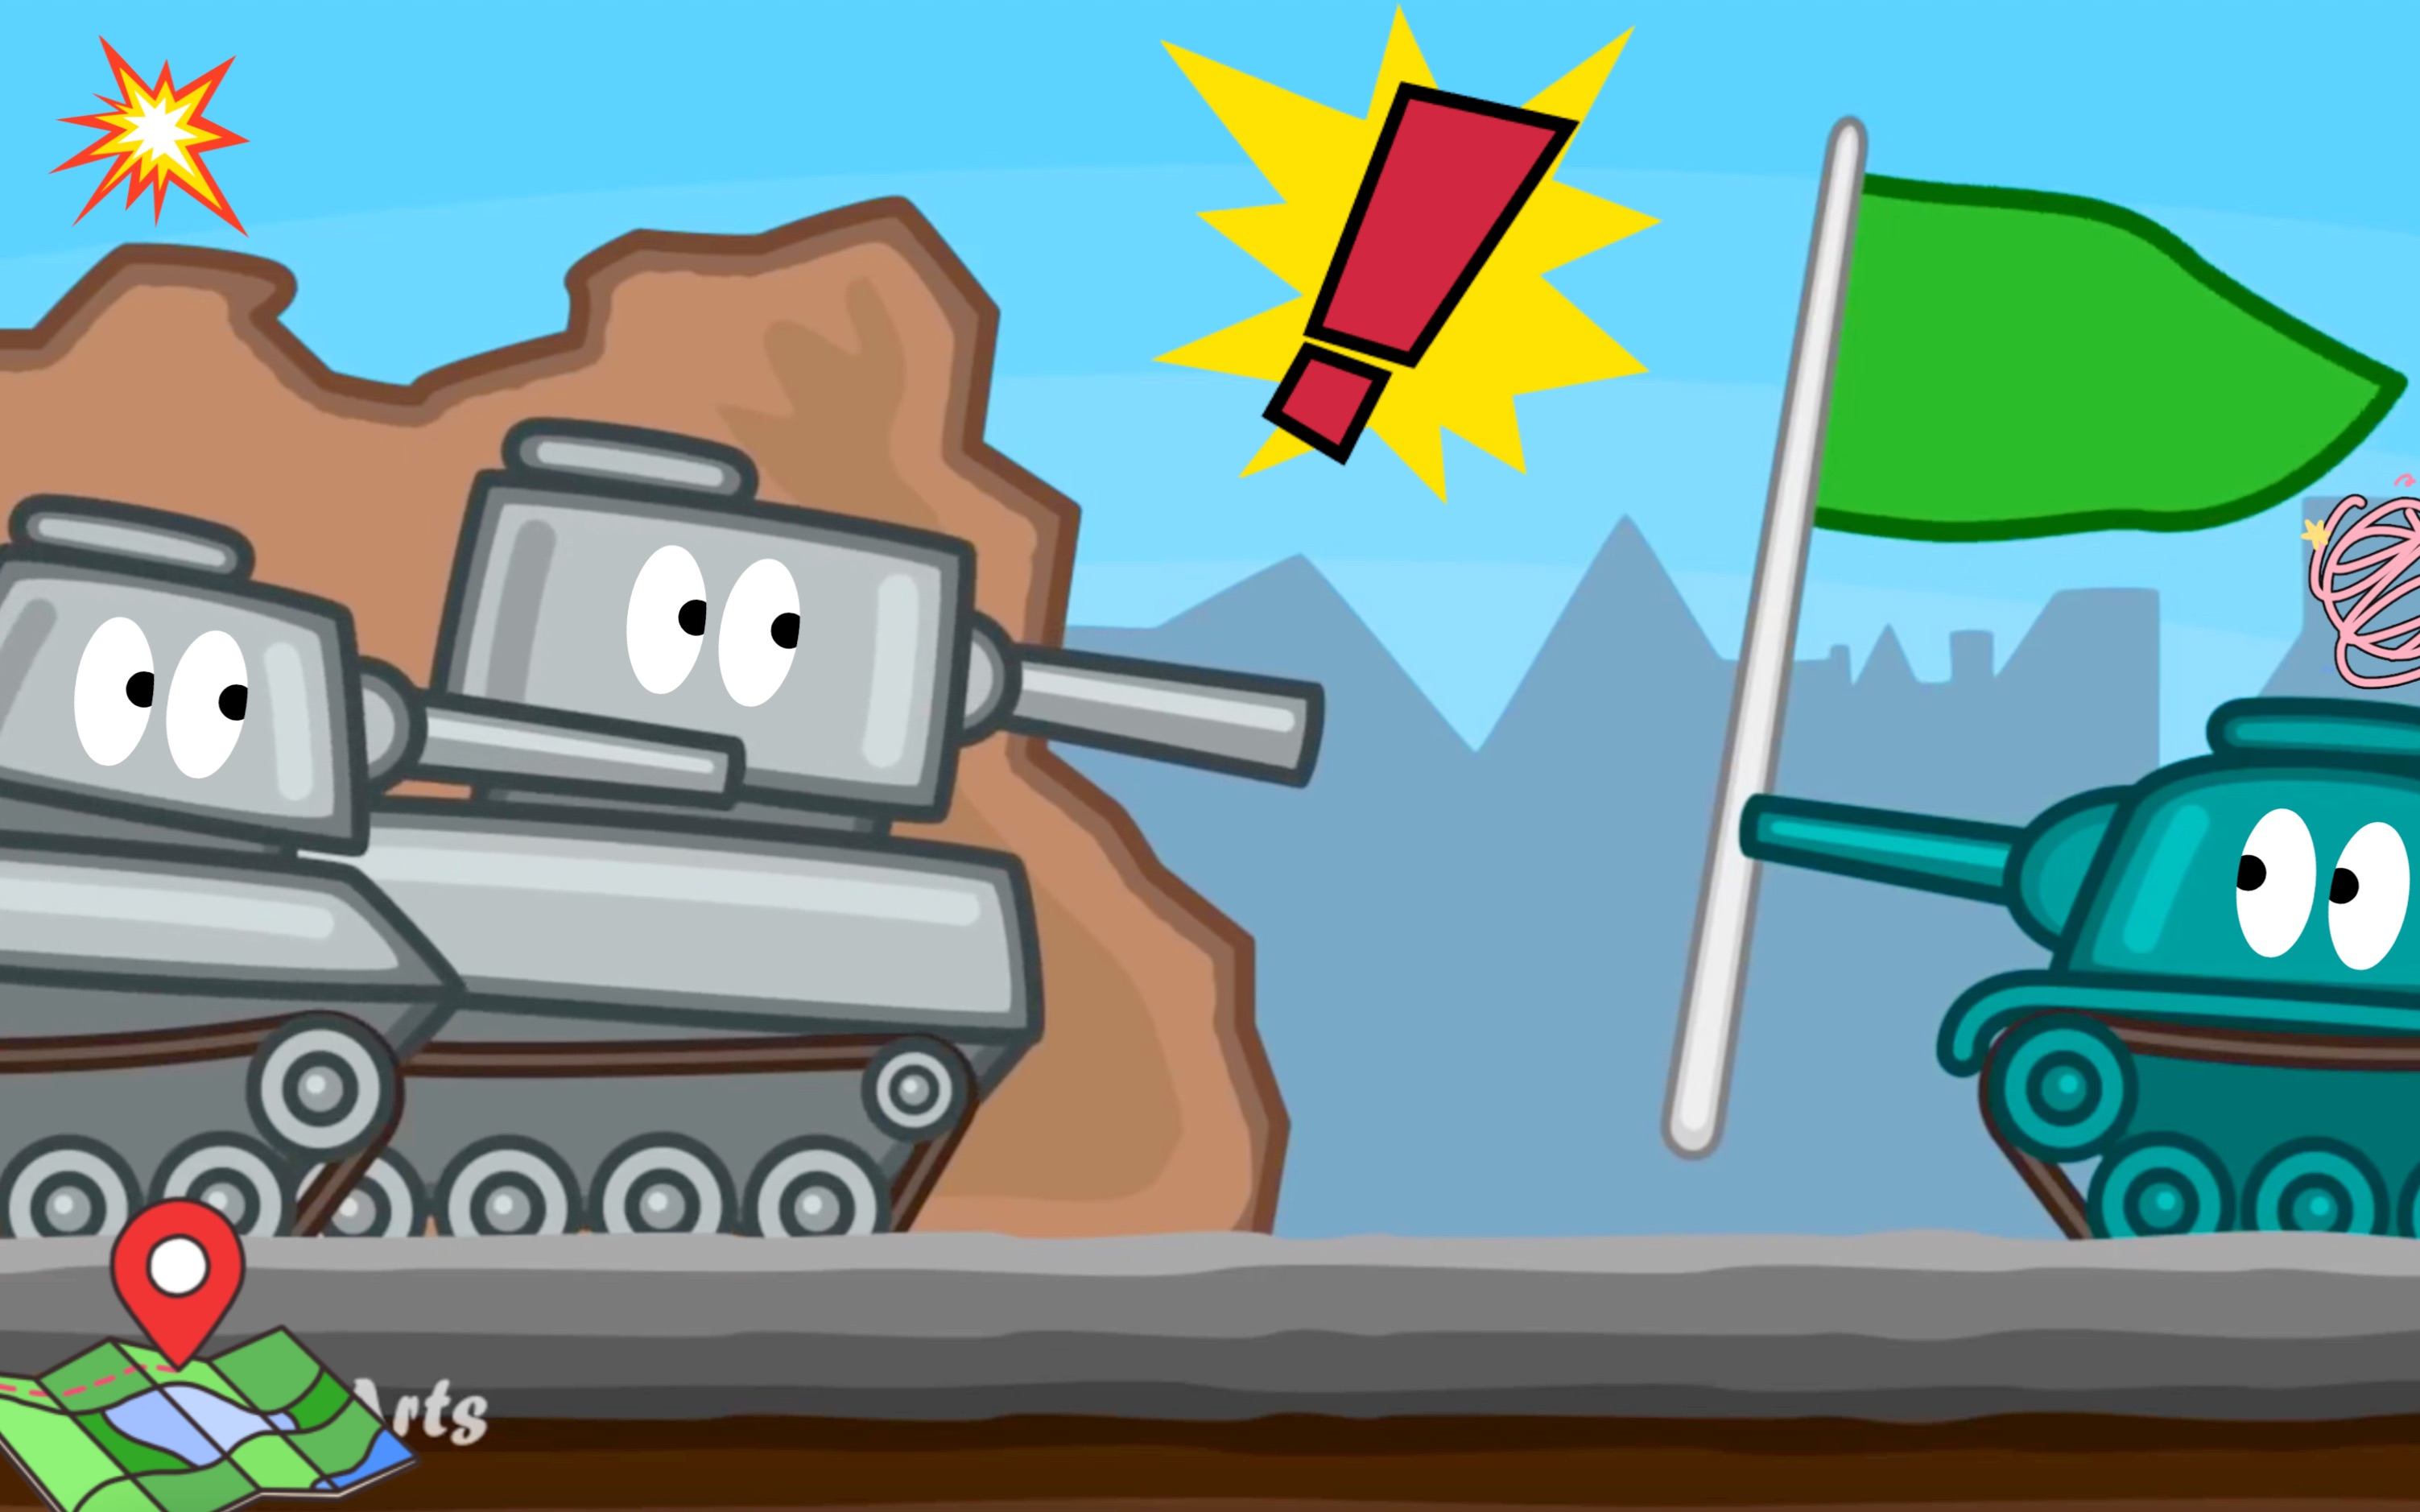 塔克世界动画:kv坦克把绿色的旗拿走了,引发双方坦克联合攻击